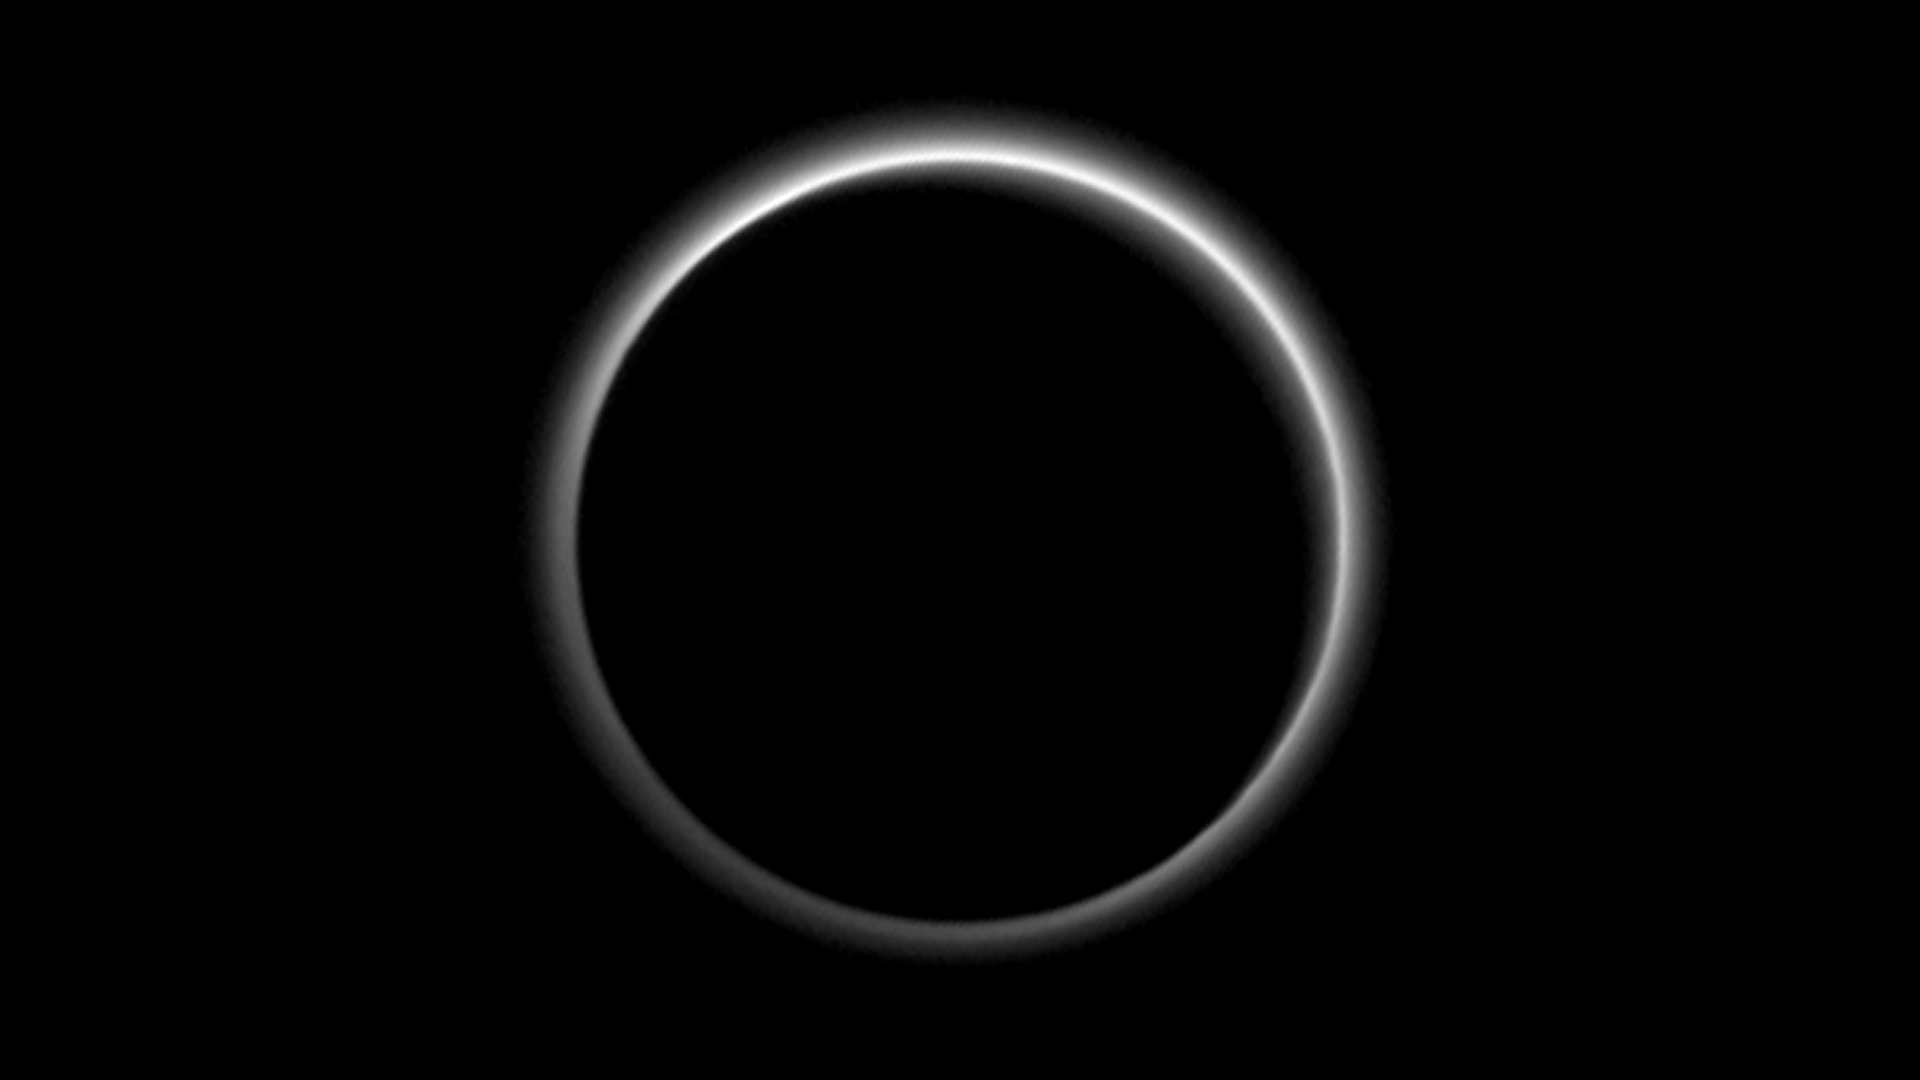 [24/07] Les images de Pluton et Charon par New Horizons